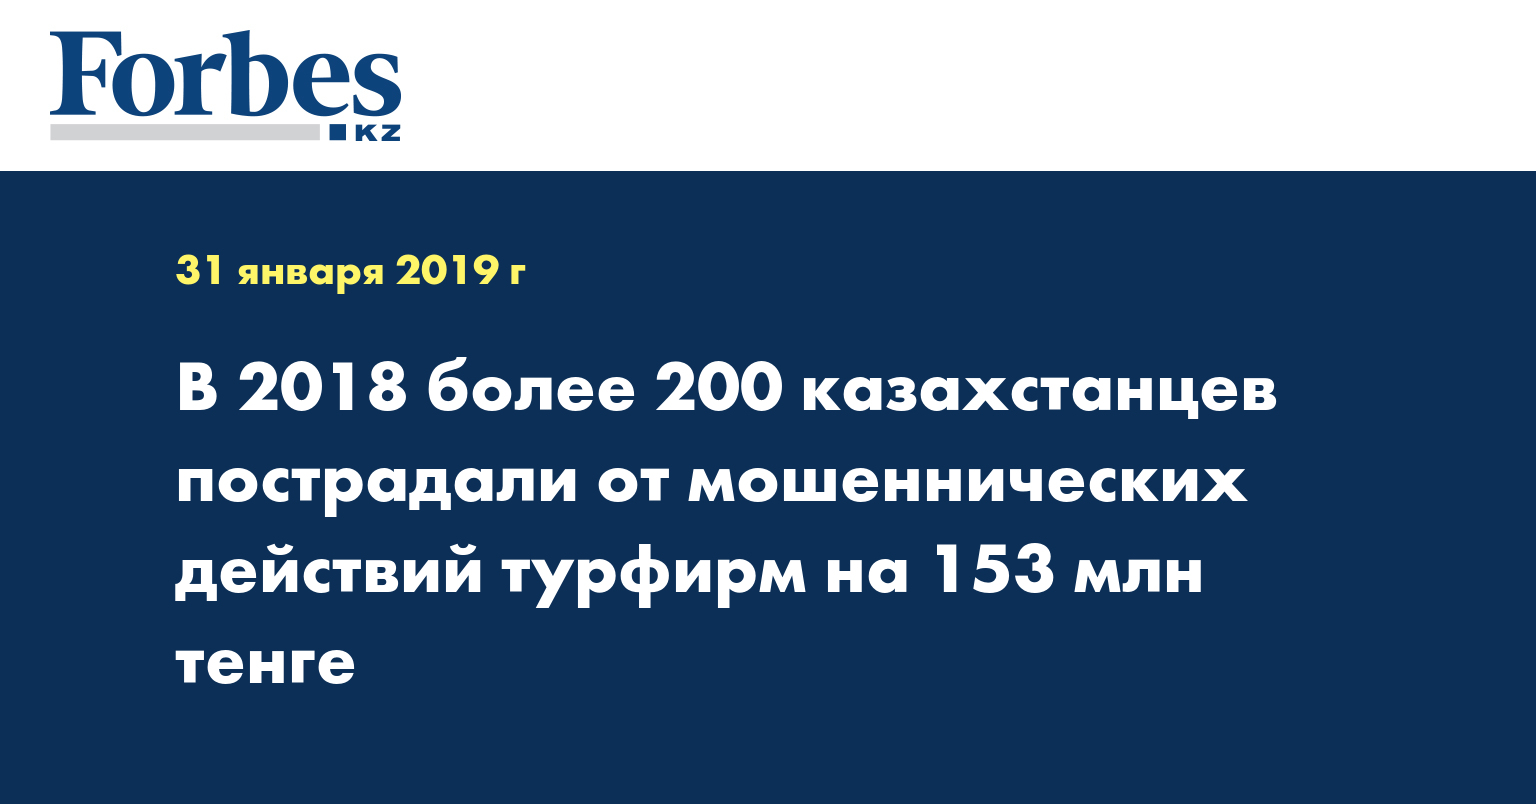  В 2018 более 200 казахстанцев пострадали от мошеннических действий турфирм на 153 млн тенге